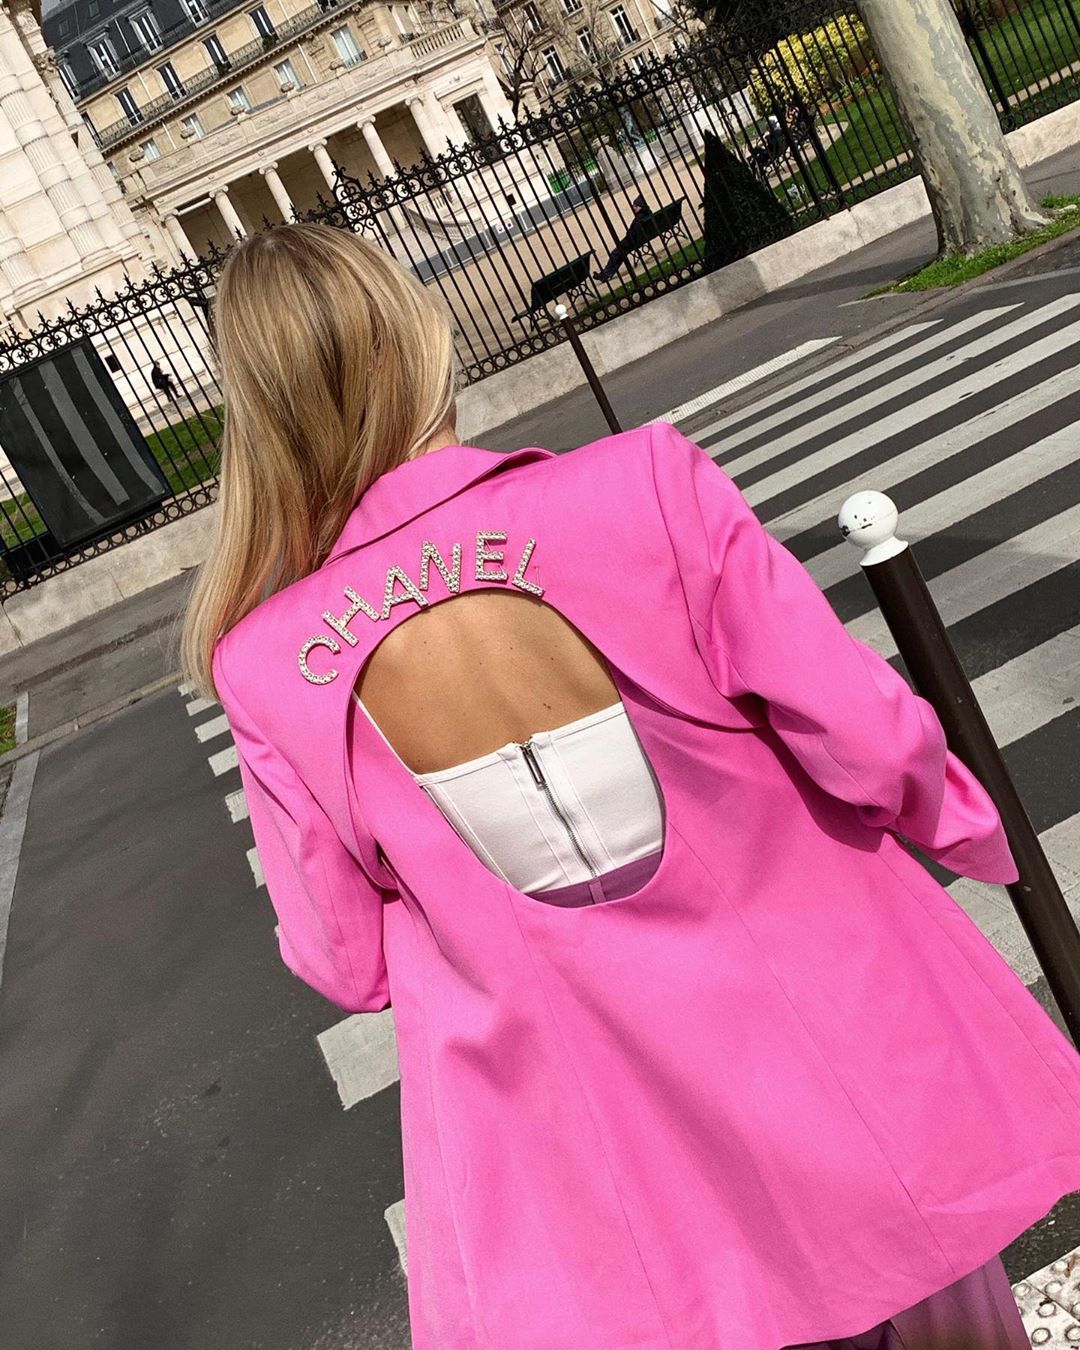 Η νέα Chanel τσάντα είναι πρακτική και πρωταγωνιστεί ήδη στα looks των fashion girls